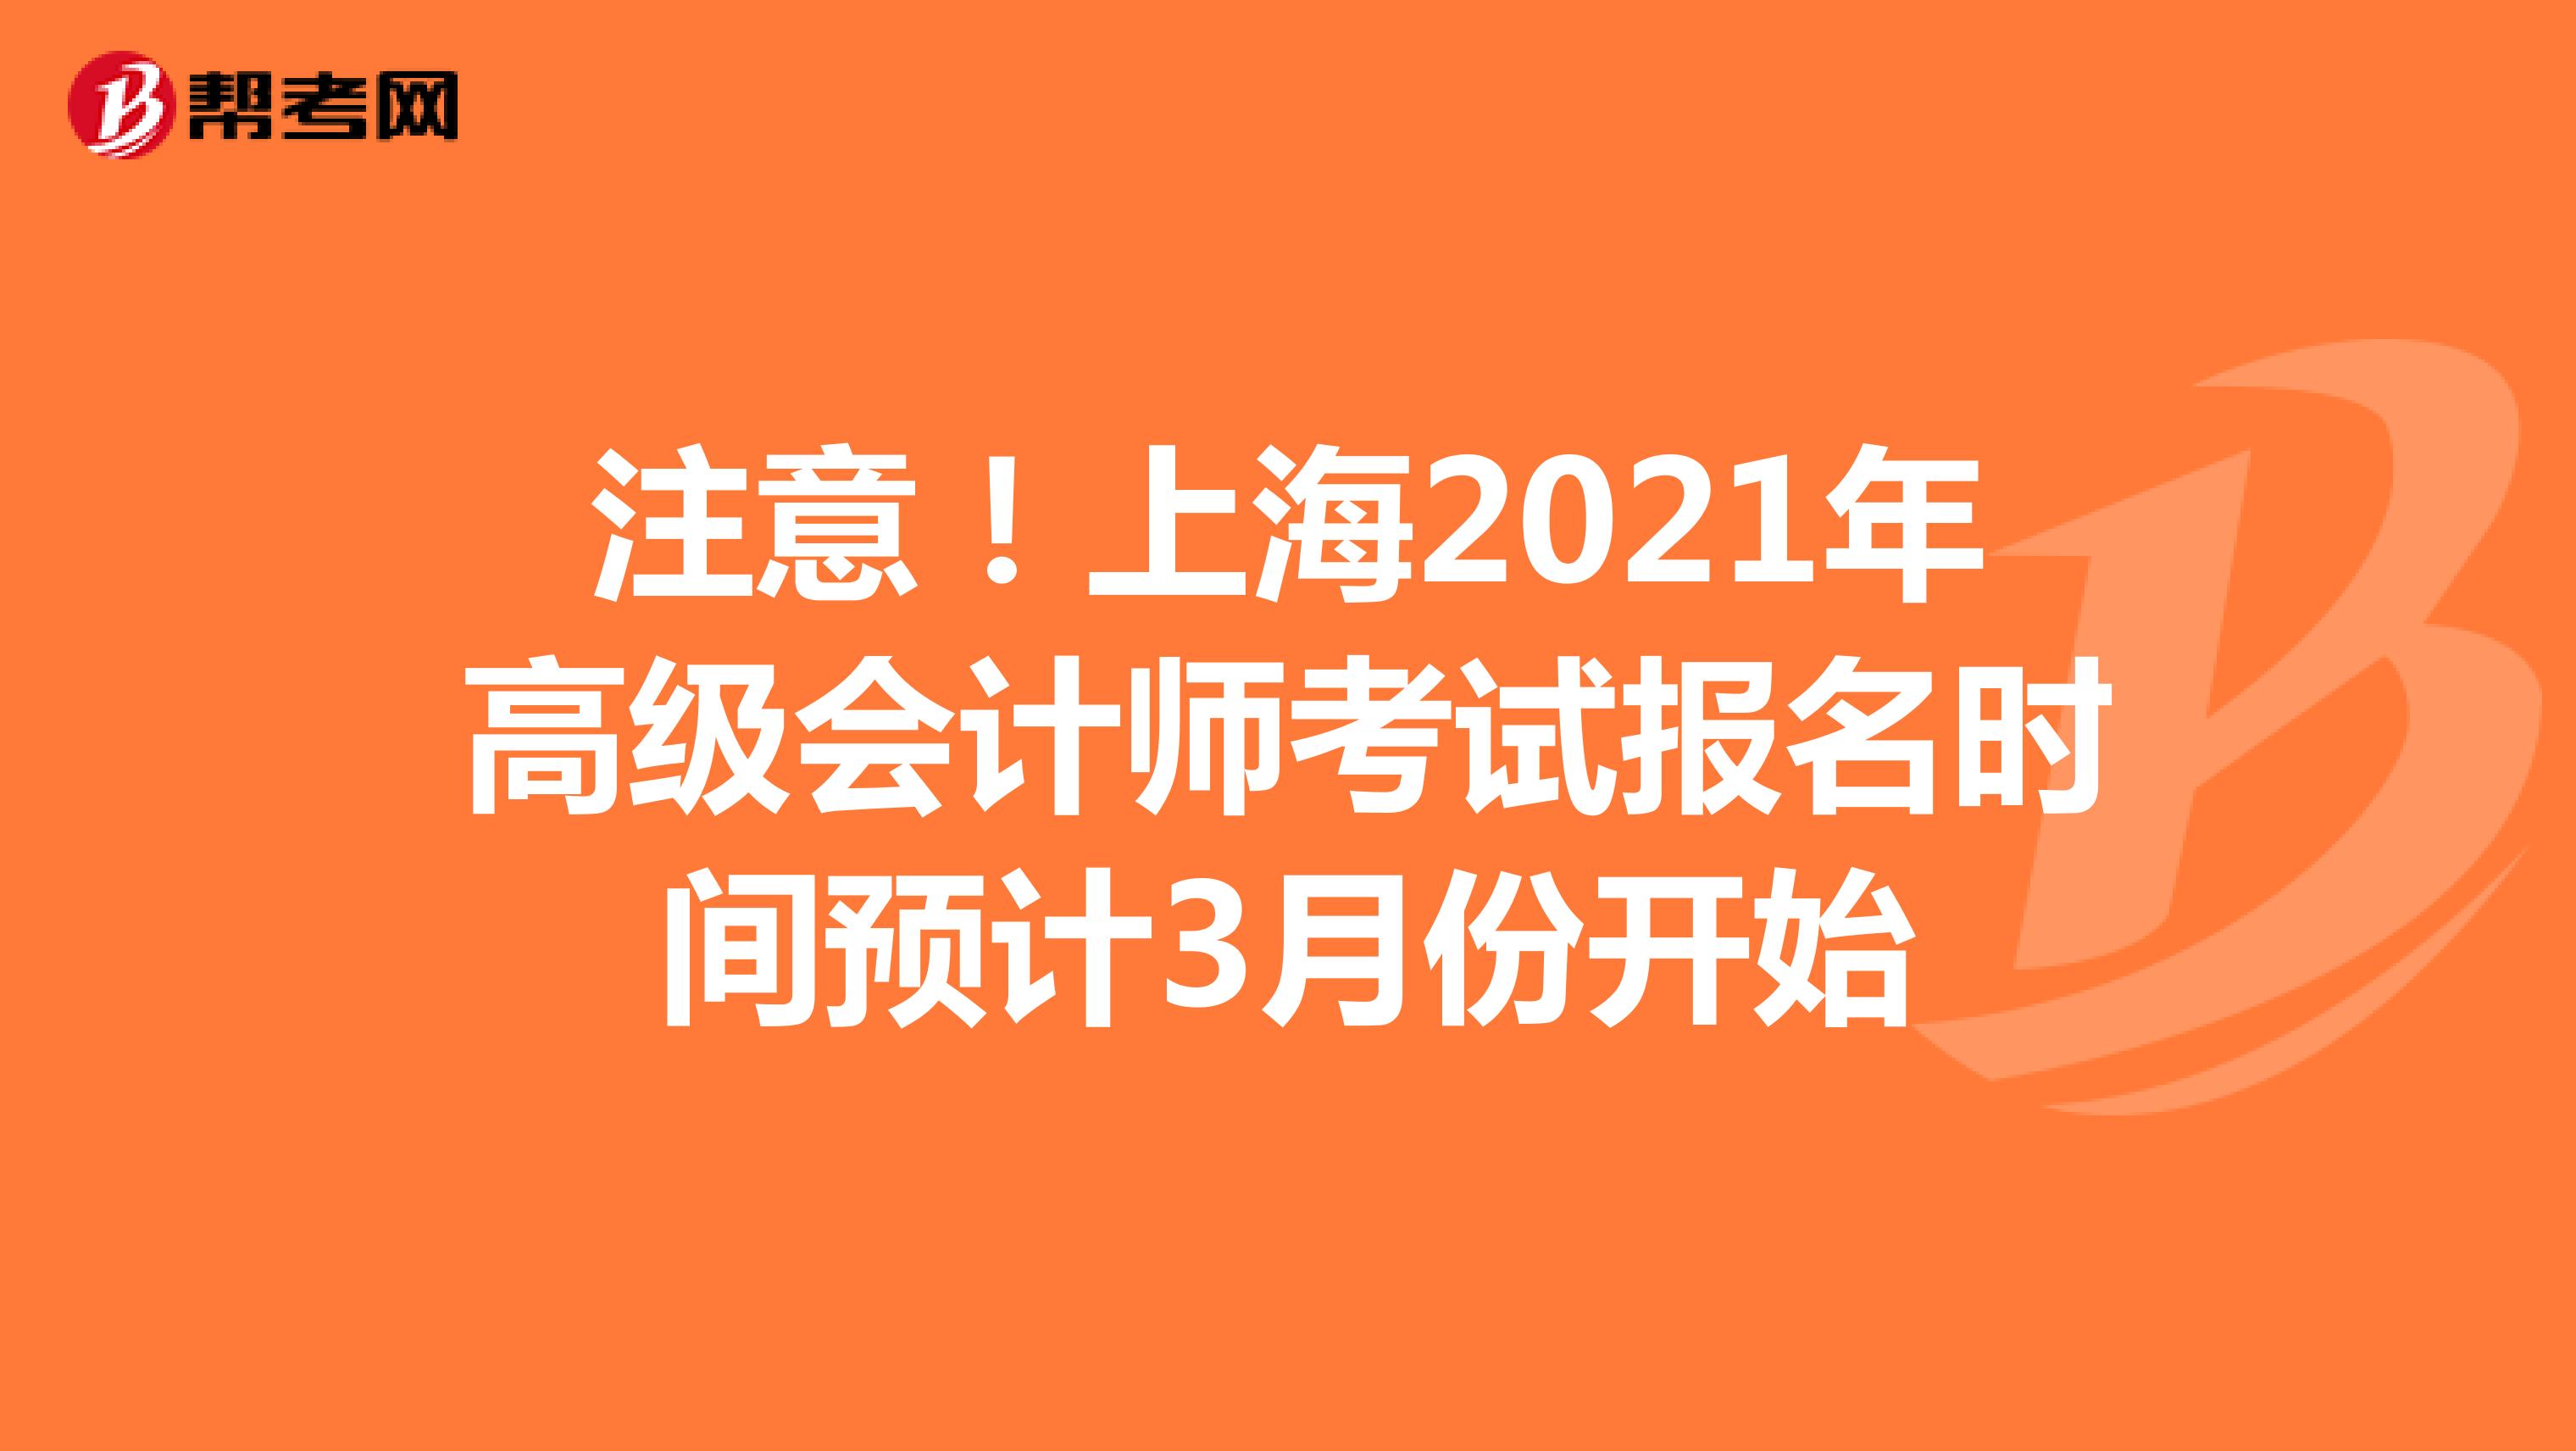 注意！上海2021年高级会计师考试报名时间预计3月份开始